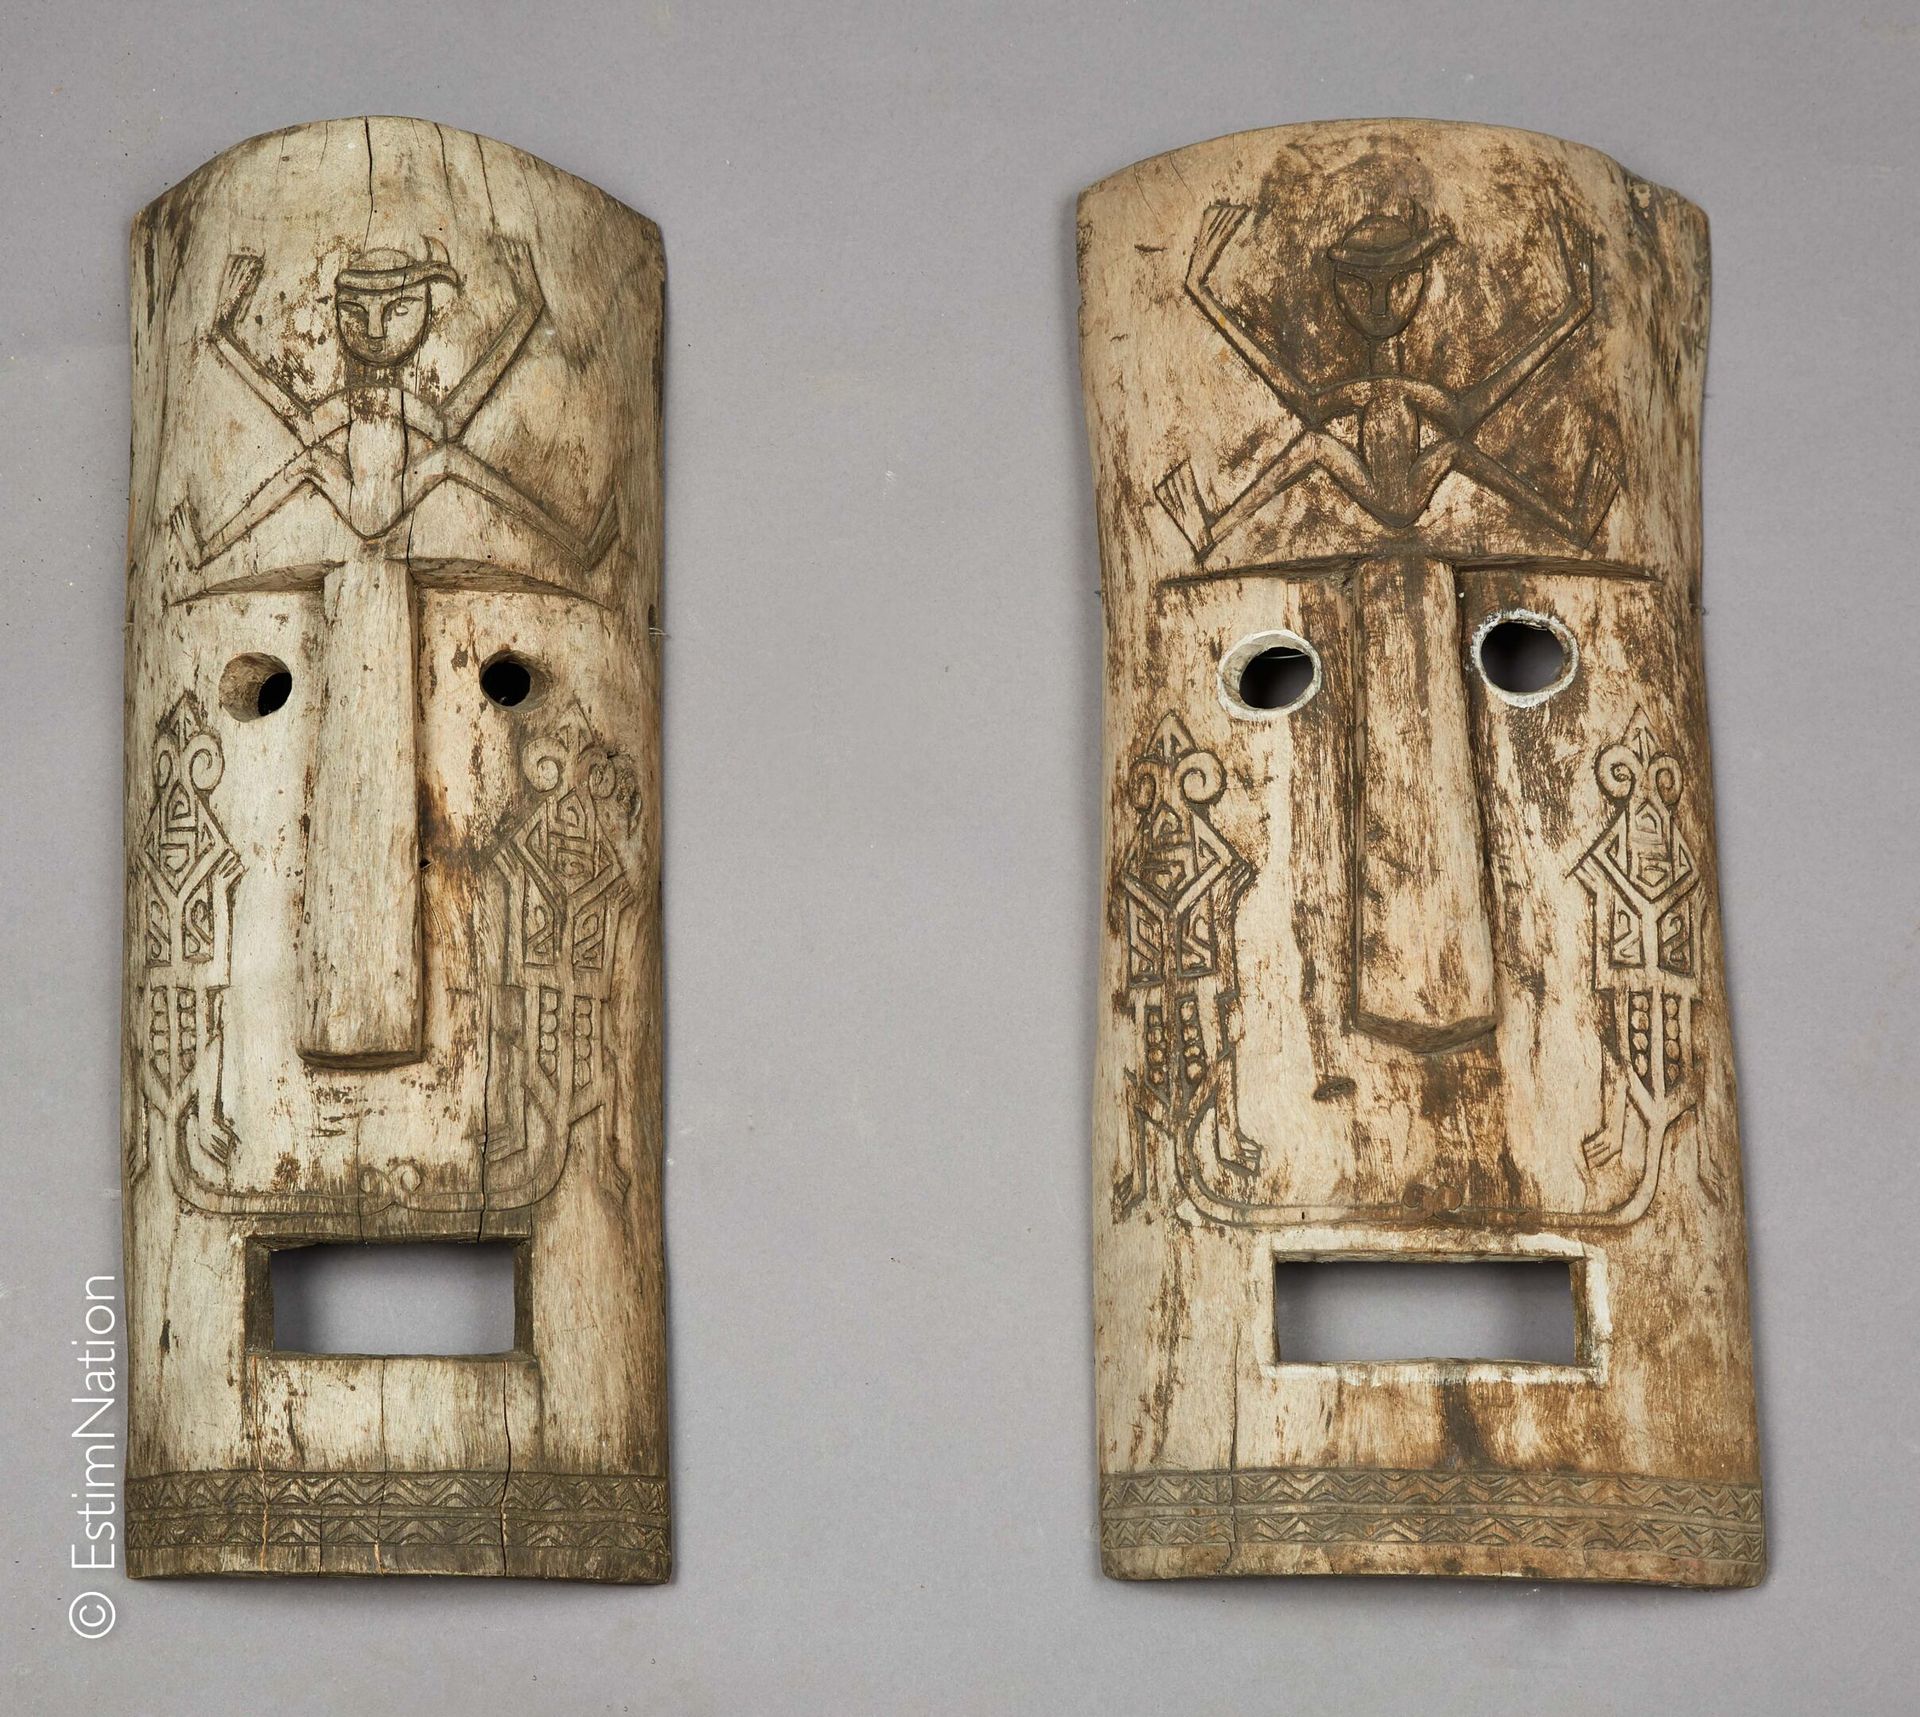 SUMATRA SUMATRA



Ein Paar Masken aus geschnitztem und patiniertem Holz, die fr&hellip;